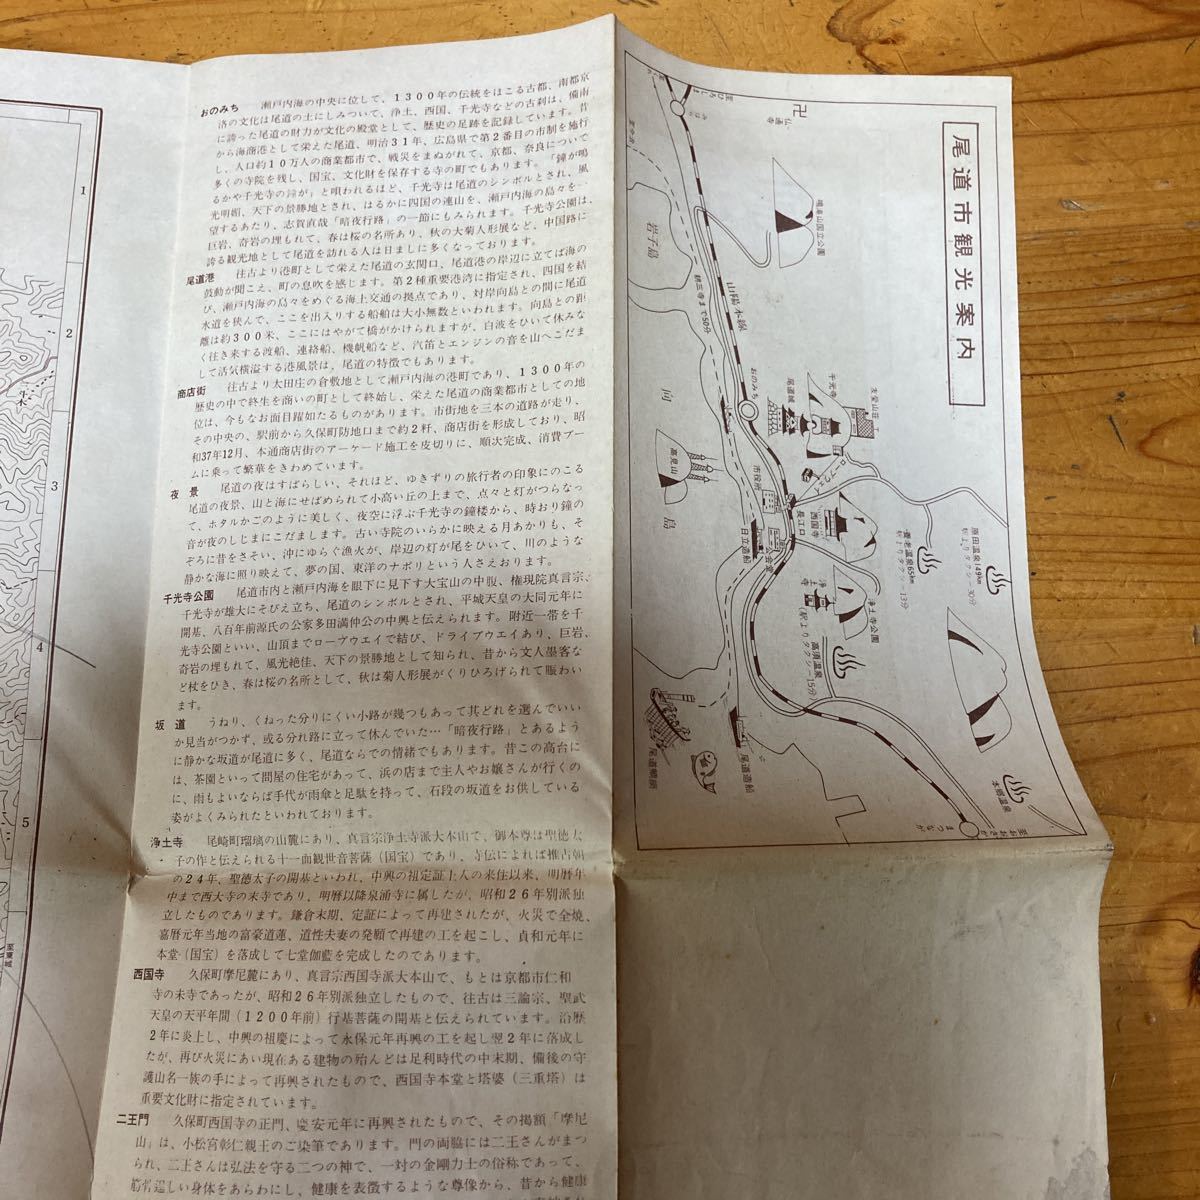  старая карта Hiroshima хвост дорога город город карта улиц Showa 42 год . документ фирма карта Showa Retro retro 